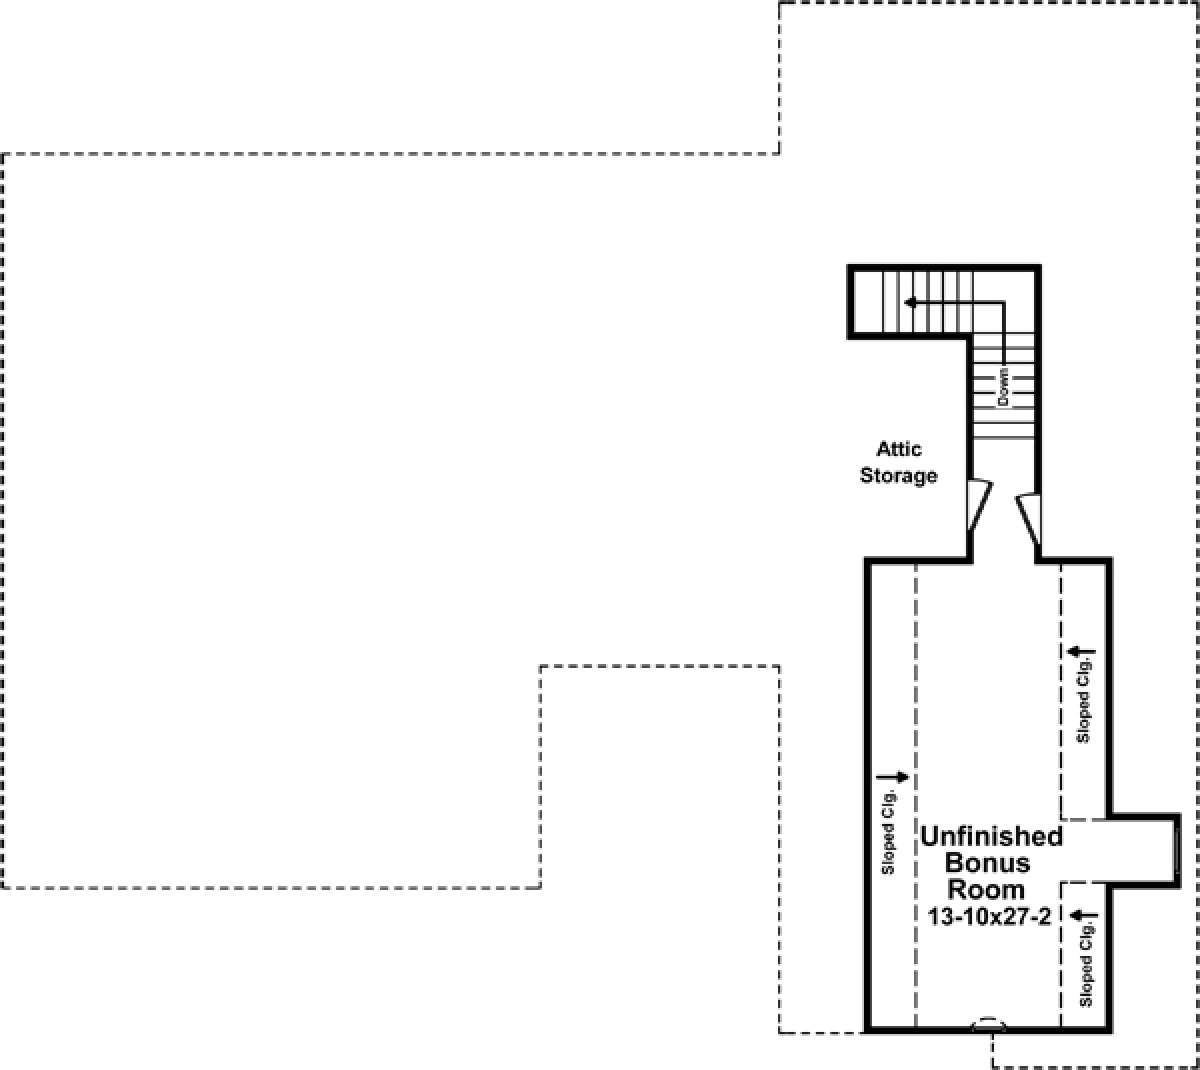 Bonus Room for House Plan #348-00226